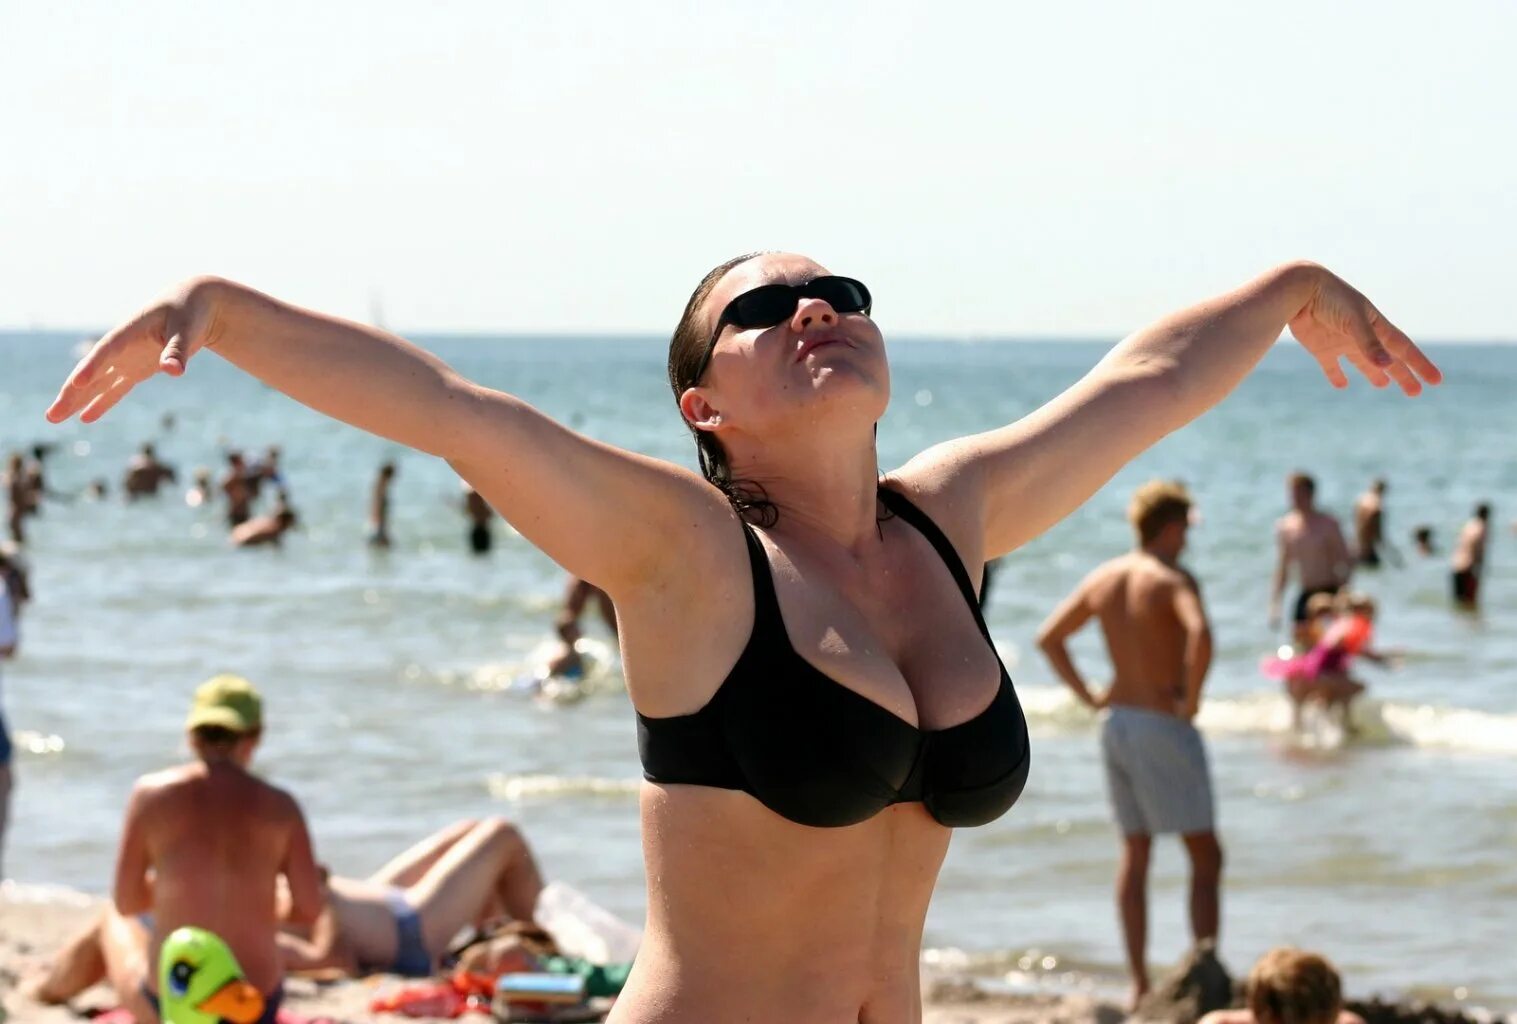 Женщины на пляже. Российские туристы на пляже. Отдыхающие на пляже. Женщины на российских пляжах. Ленка на море